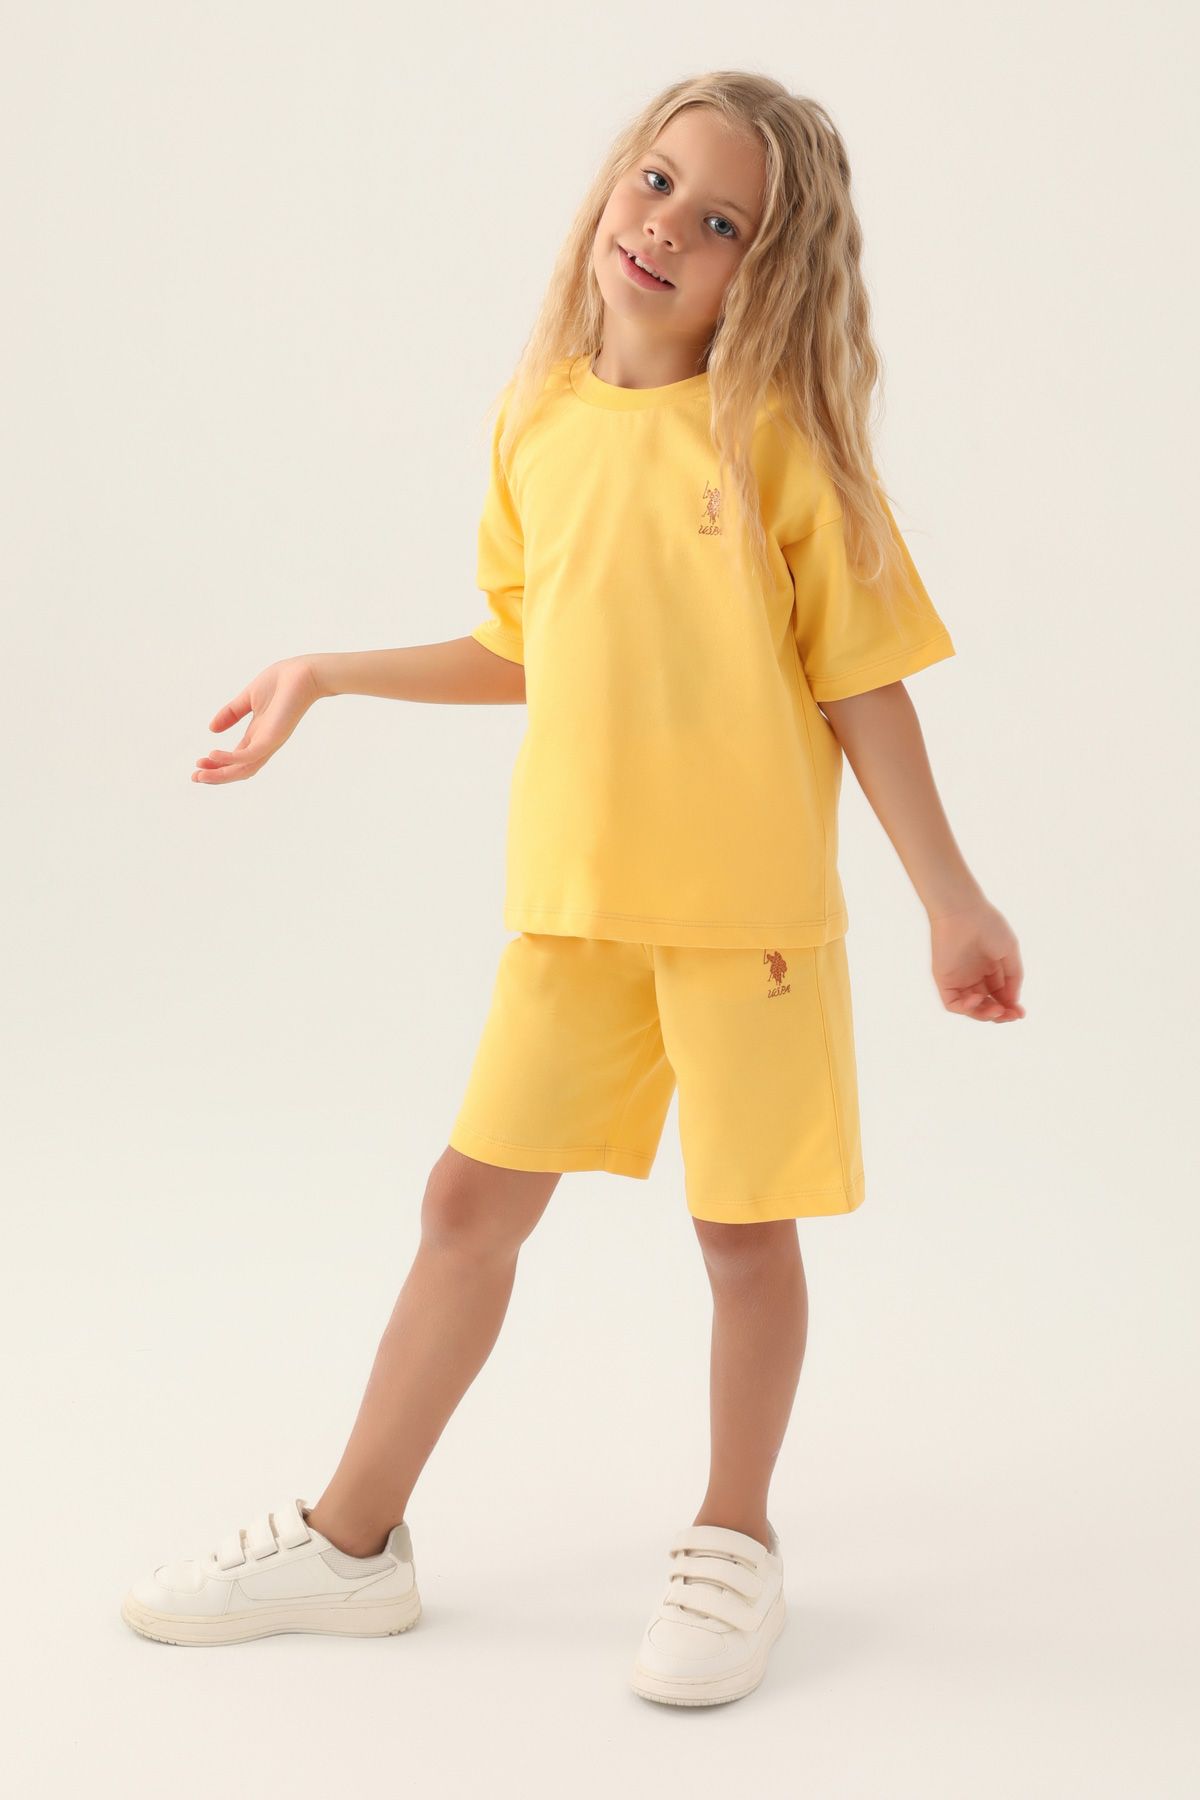 Костюм повседневный детский U.S. POLO Assn. US1822-V1, желтый, 128 костюм повседневный детский u s polo assn us1822 v1 розовая пудра 170